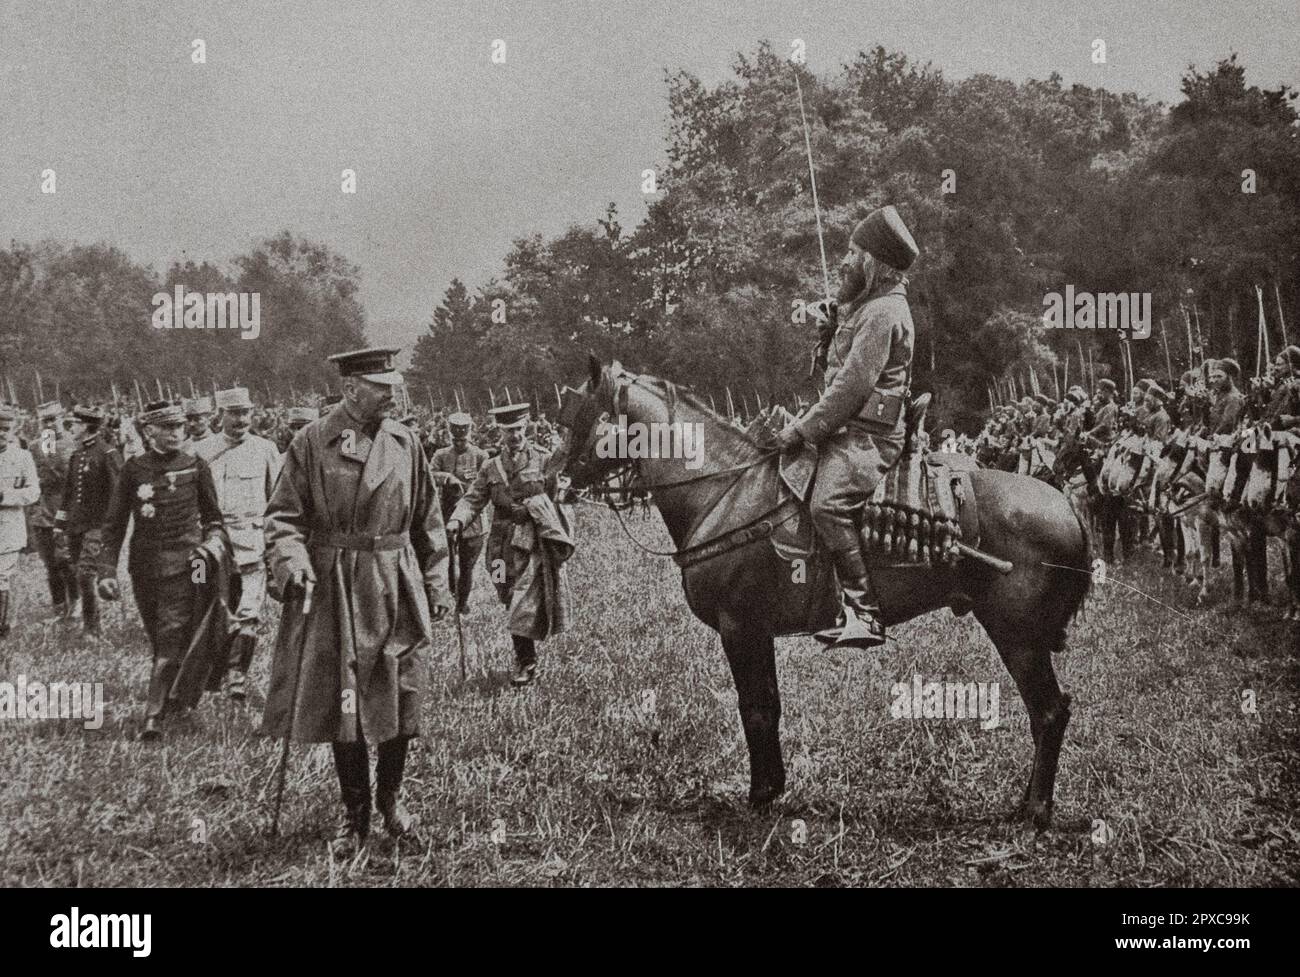 Erster Weltkrieg Lord Kitchener, nachdem er die indigenen Truppen der afrikanischen Armee überprüft hatte, tauschte ein paar Worte auf Arabisch mit einem Offizier algerischer Spahis aus. 1915 Stockfoto